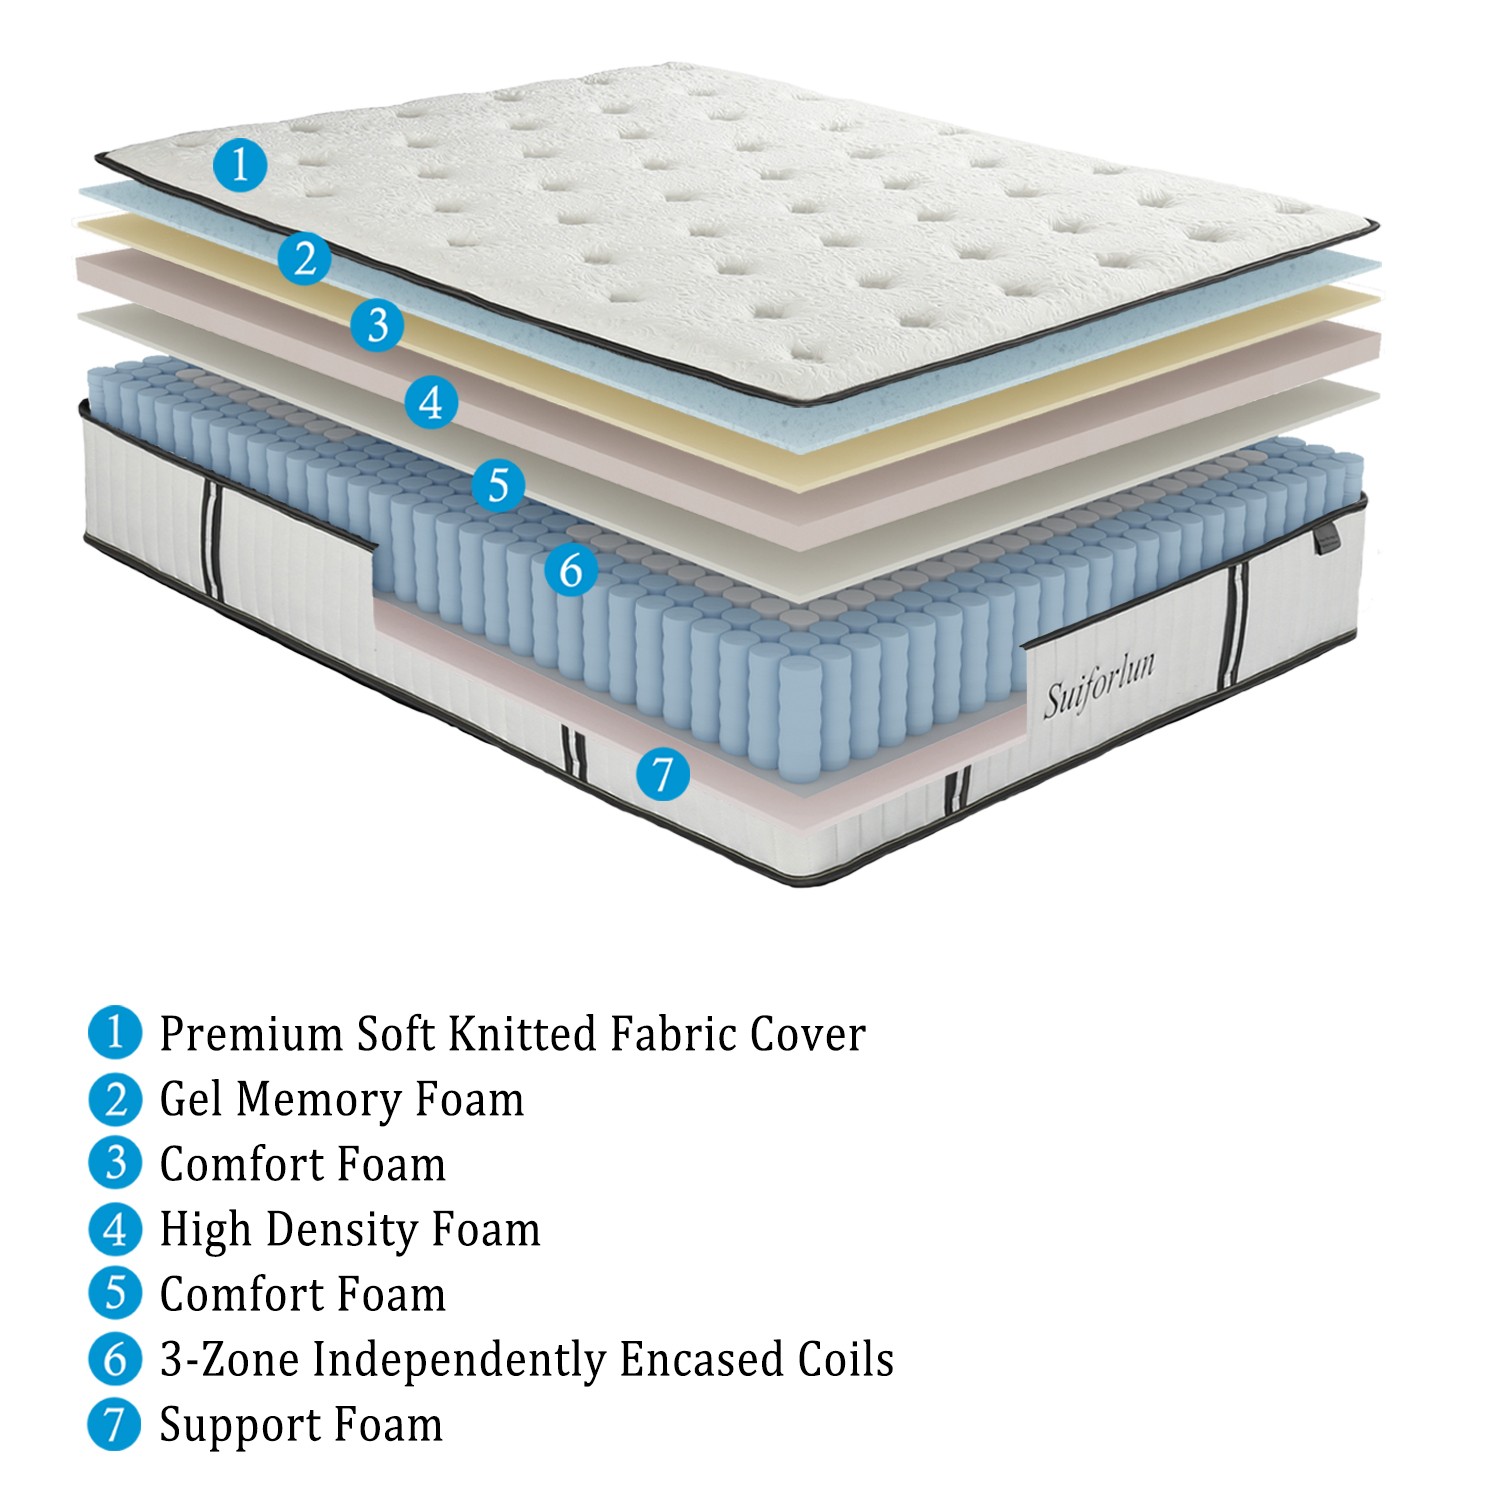 Suiforlun mattress hybrid bed wholesale-2